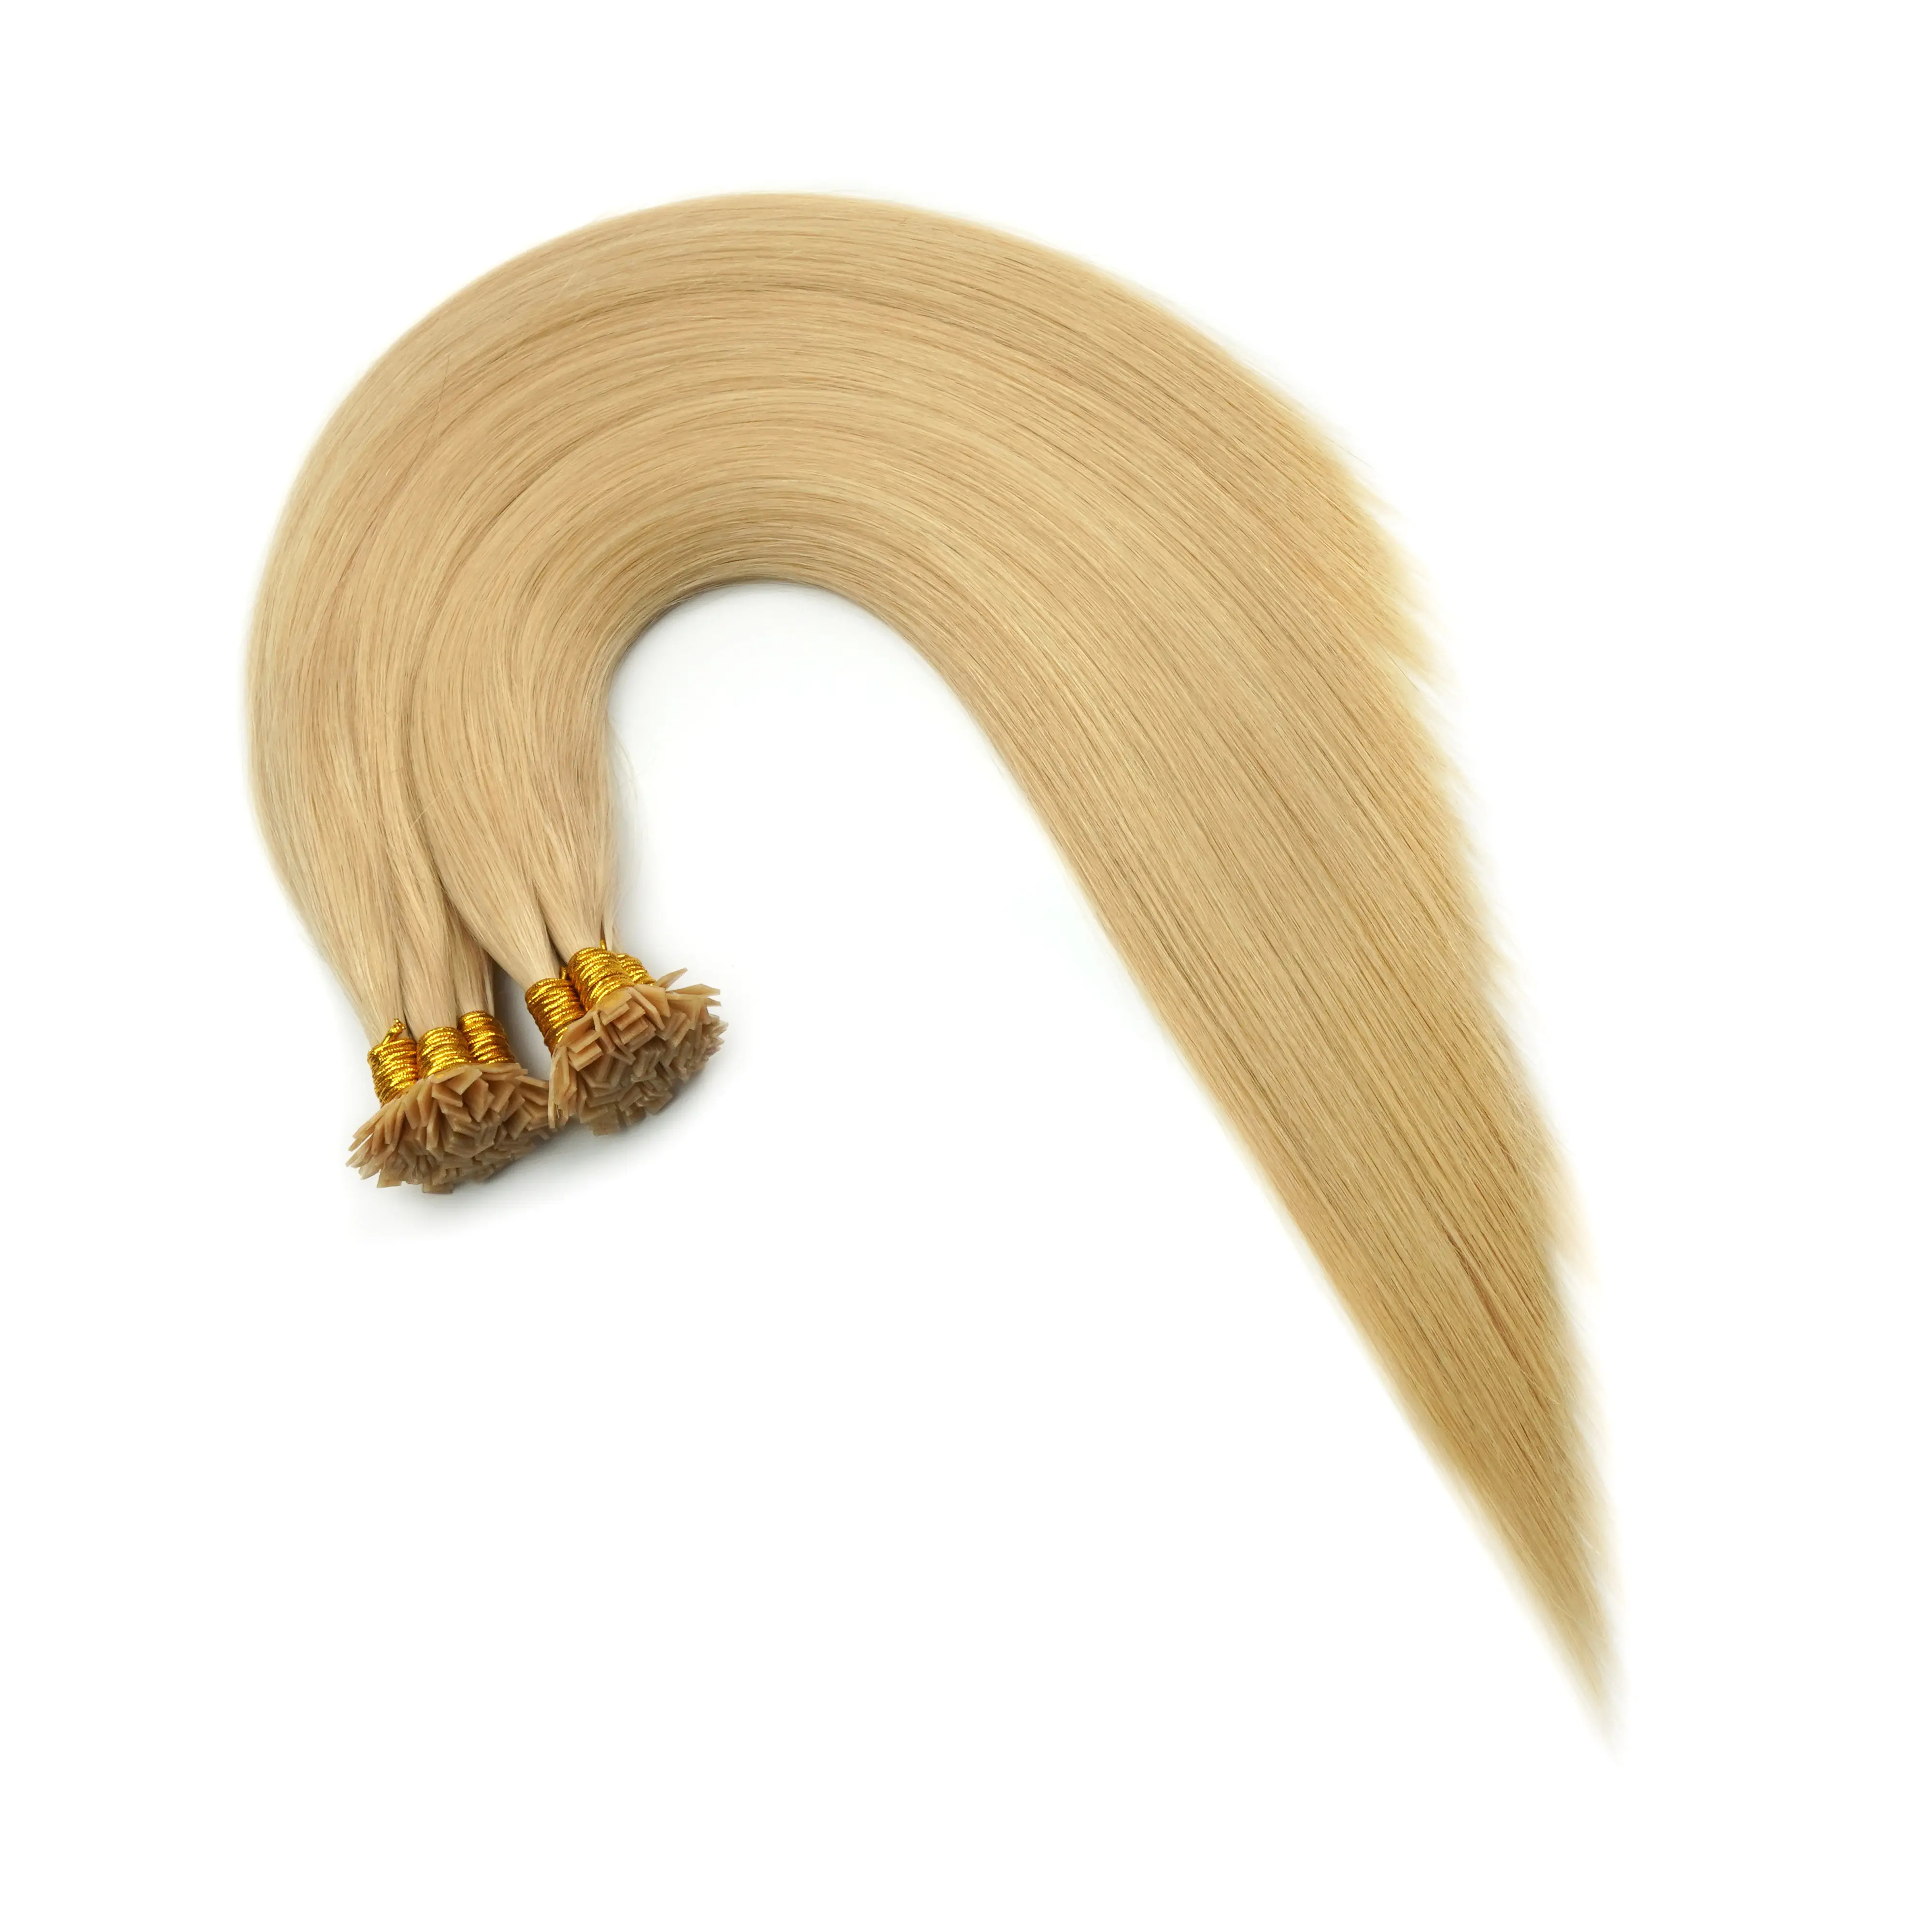 Groothandelsprijzen Geen Prijsverschil Fabriek Direct Leveren Hoge Kwaliteit Platte Tip Hair Extensions Met Snelle Levering